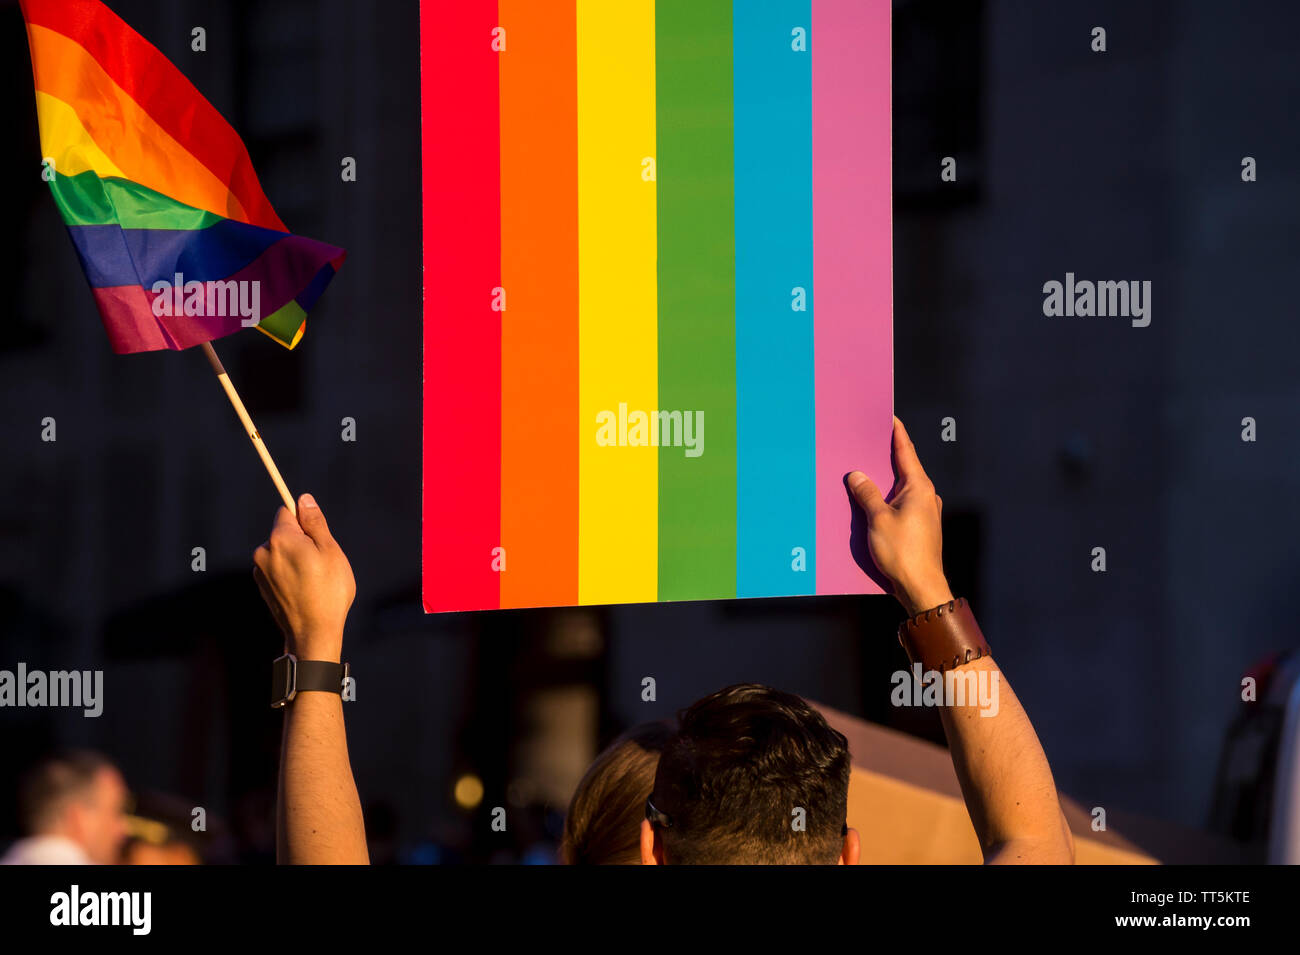 Vue d'arcs-en-ciel colorés drapeaux et signes détenus dans un méconnaissable foule à une gay pride parade dans la ville Banque D'Images